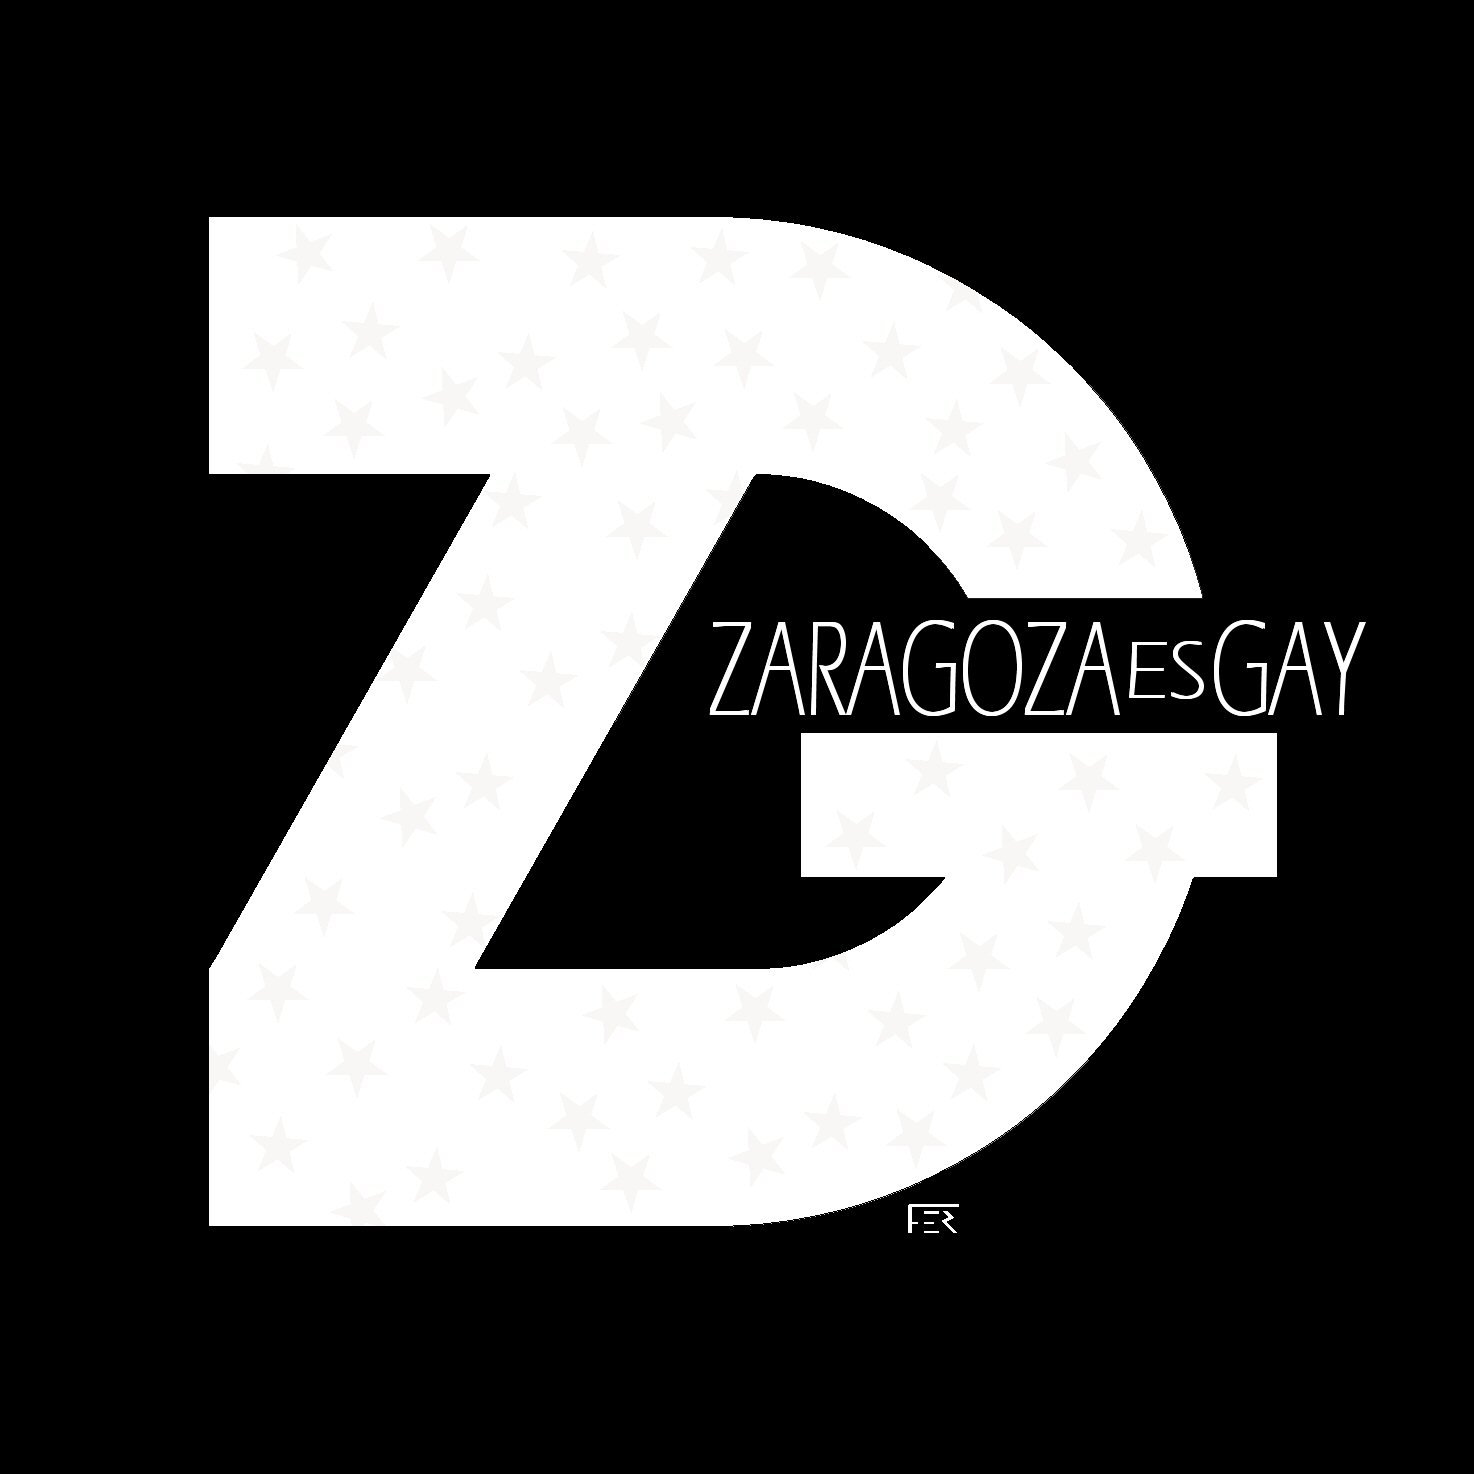 Zaragozaesgay